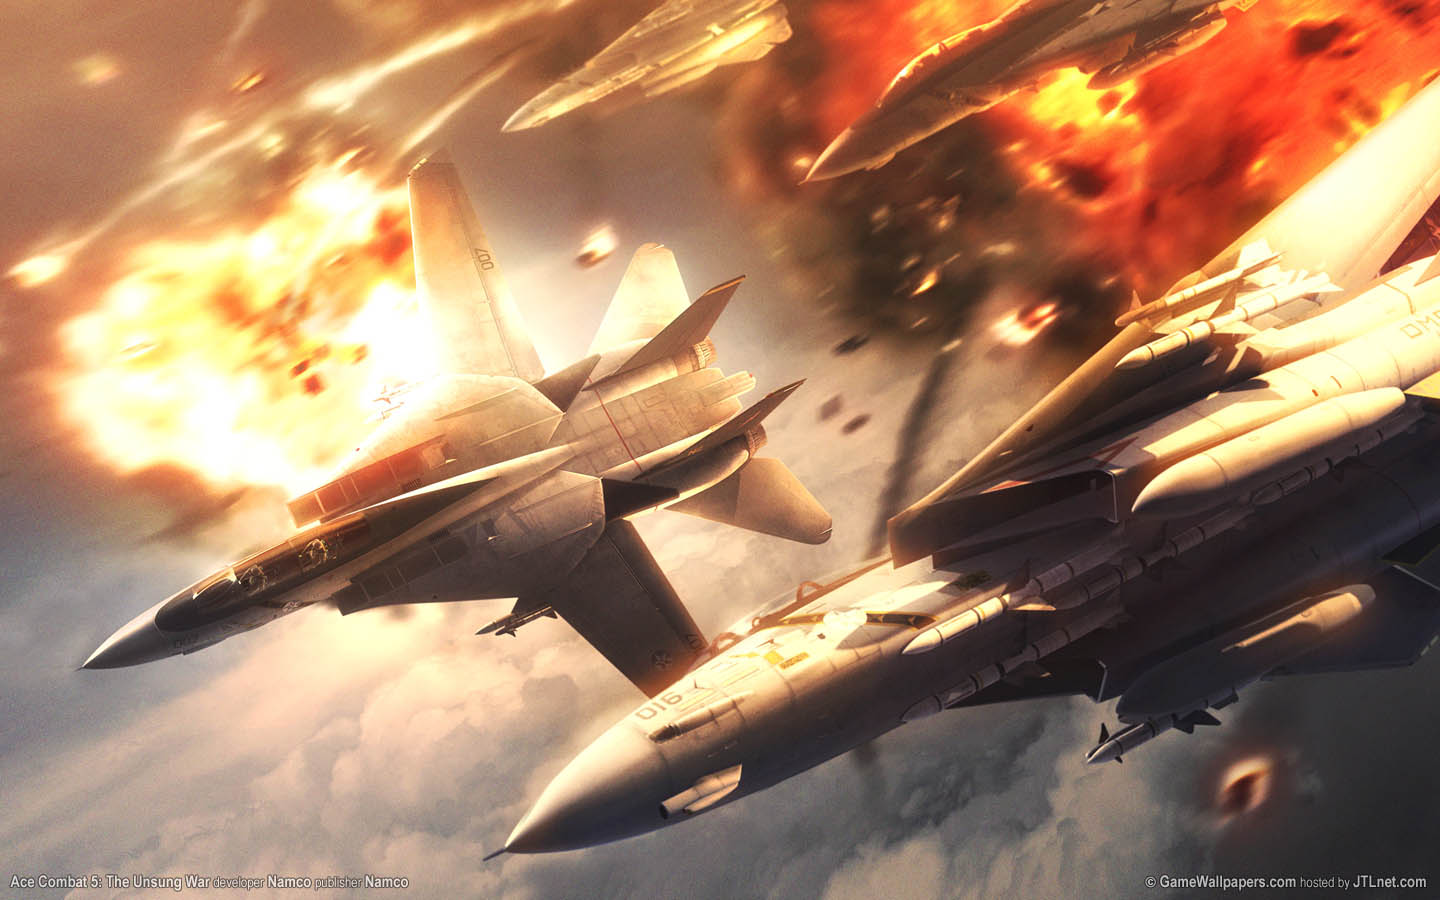 Ace Combat 5: The Unsung War fond d'cran 03 1440x900